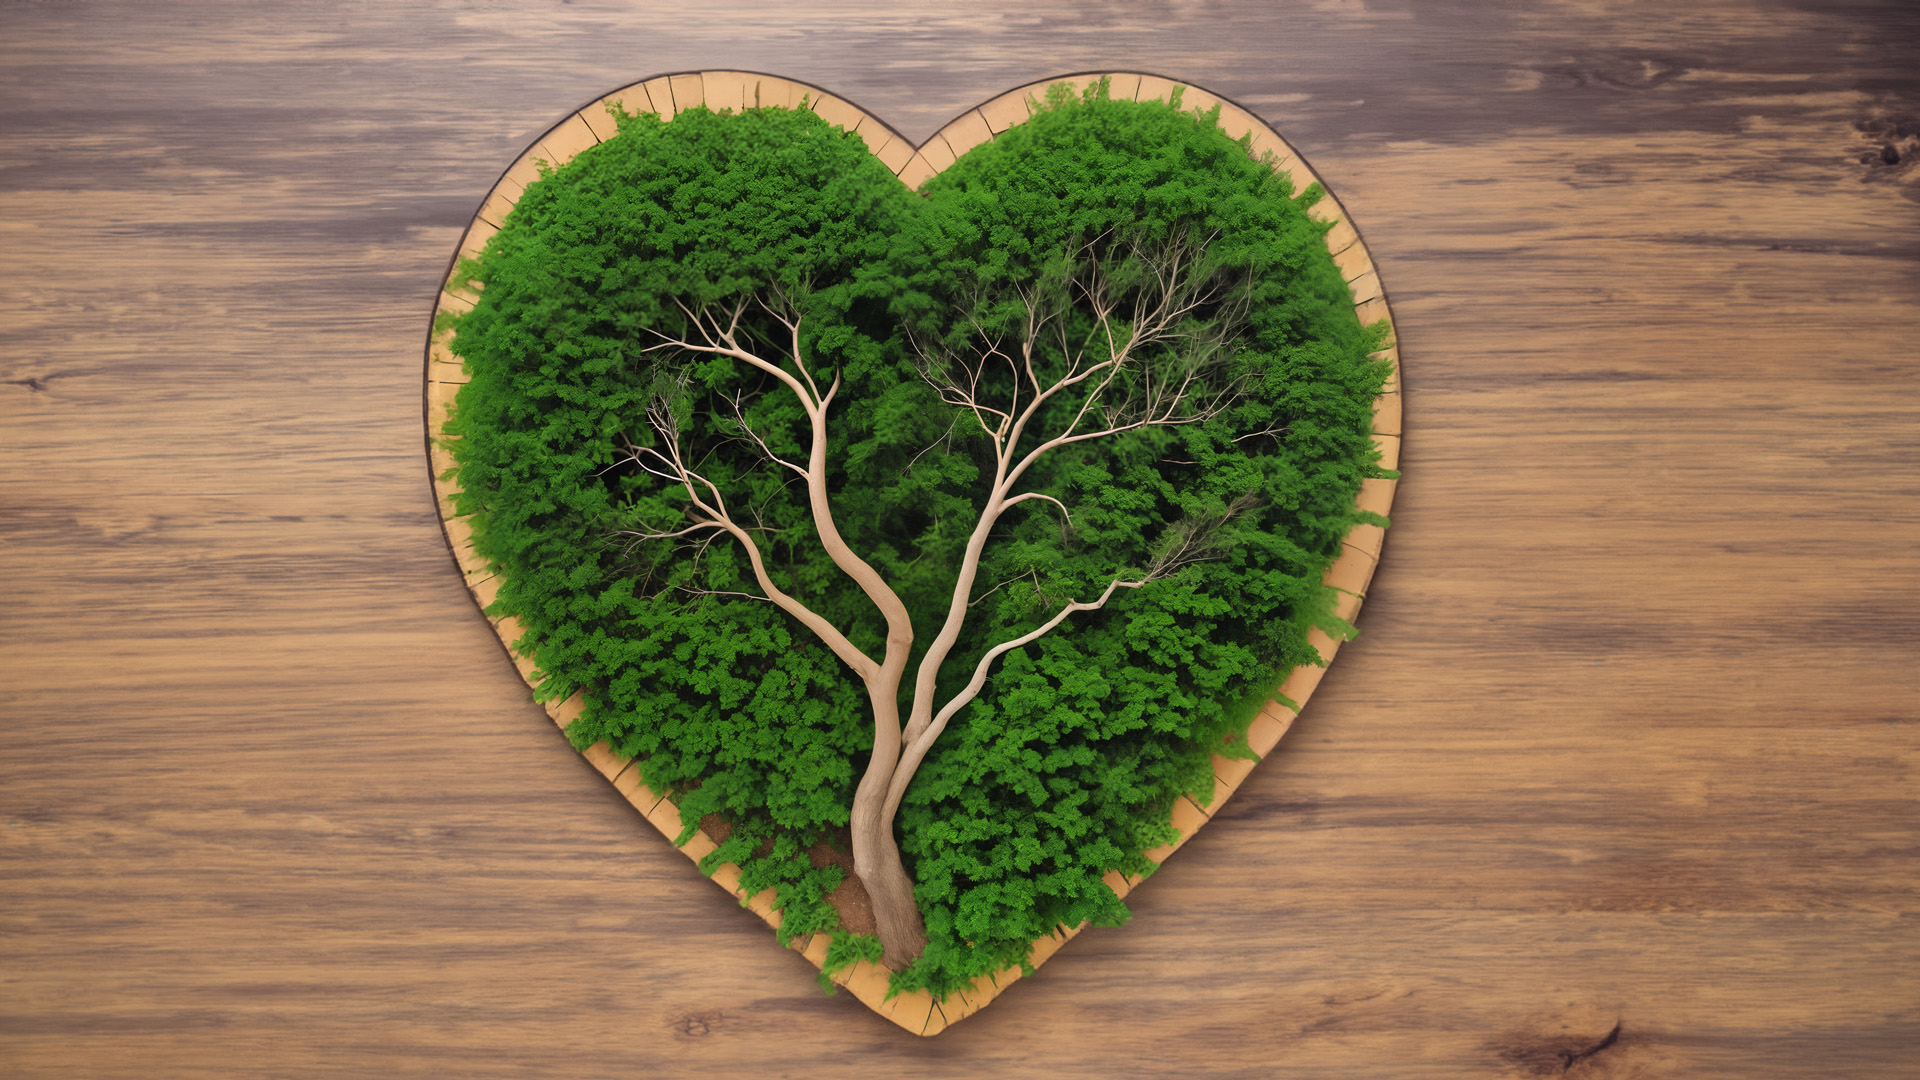 drzewo, liście, wieniec, kształt serca, przyroda, uczucia, harmonia, miłość, unikalność, życie, kompozycja